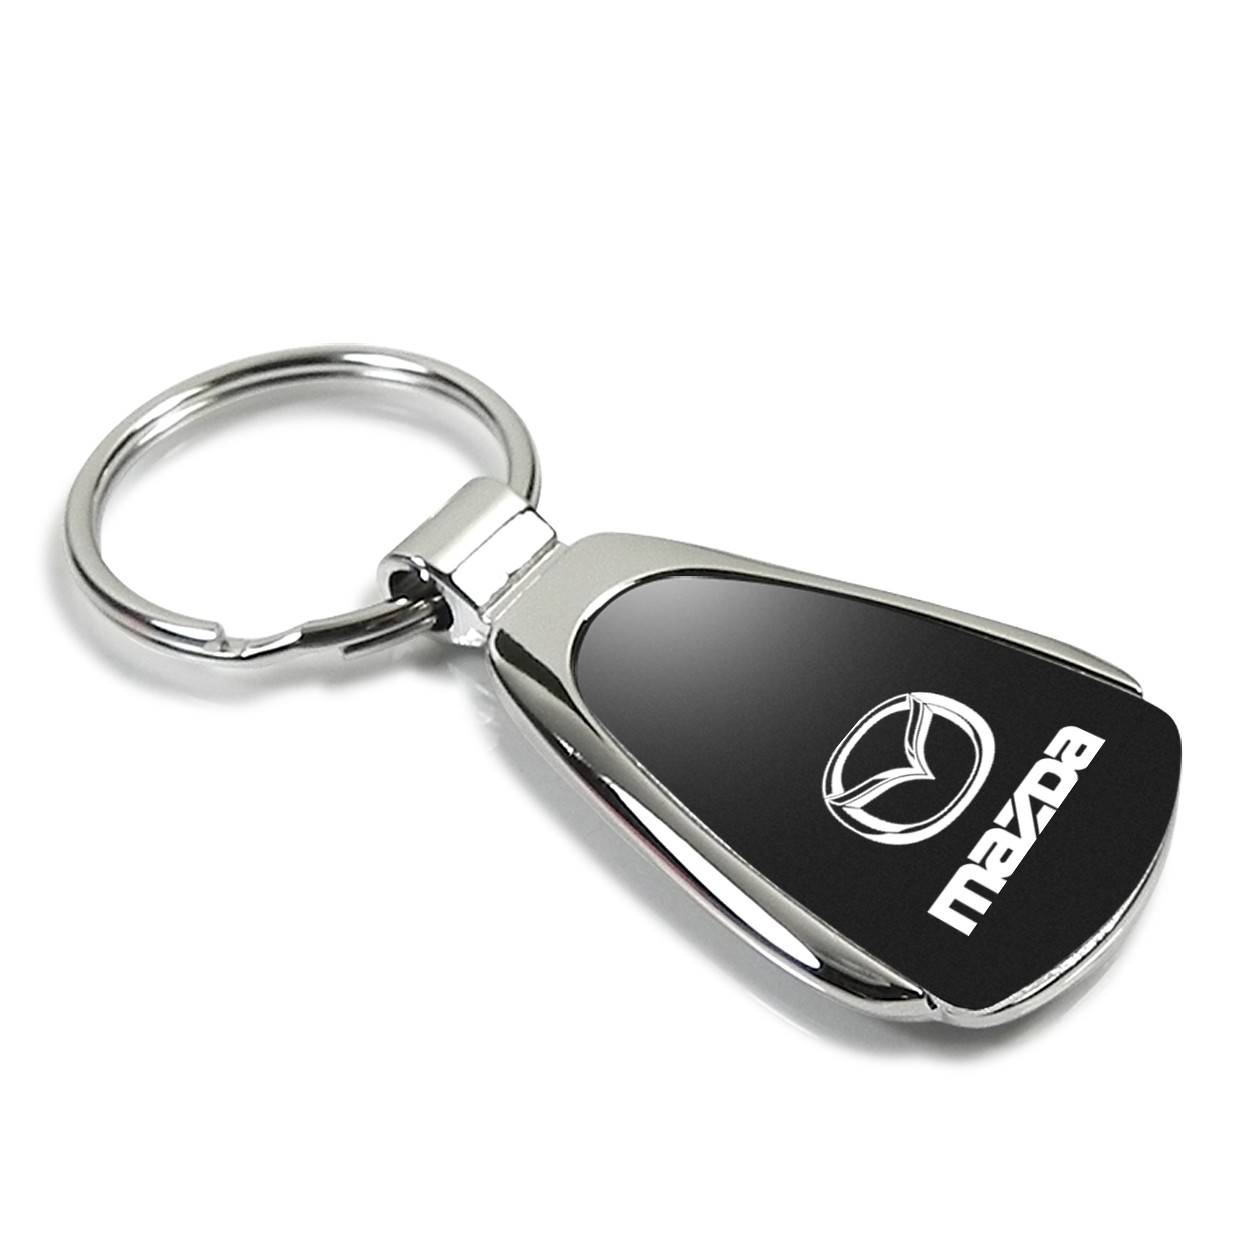 Schlüsselanhänger Mazda, Metall, Tropfenform, schwarz/silber